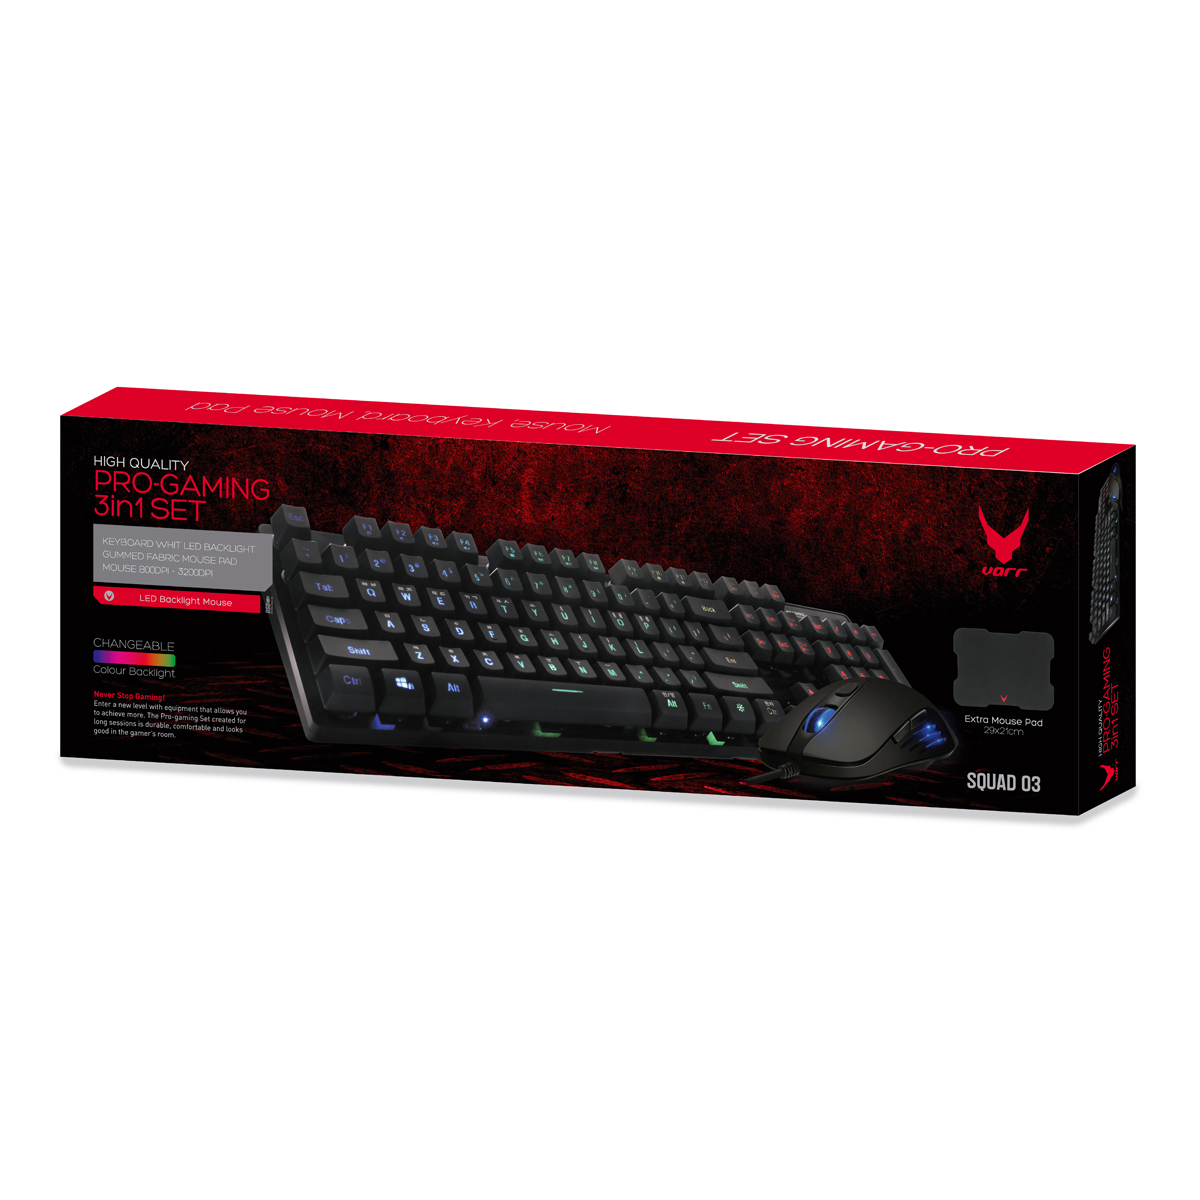 VARR Gaming set, keyboard: cherry R1-R4, mouse 3200dpi PIXART, muismat zwart met VARR logo